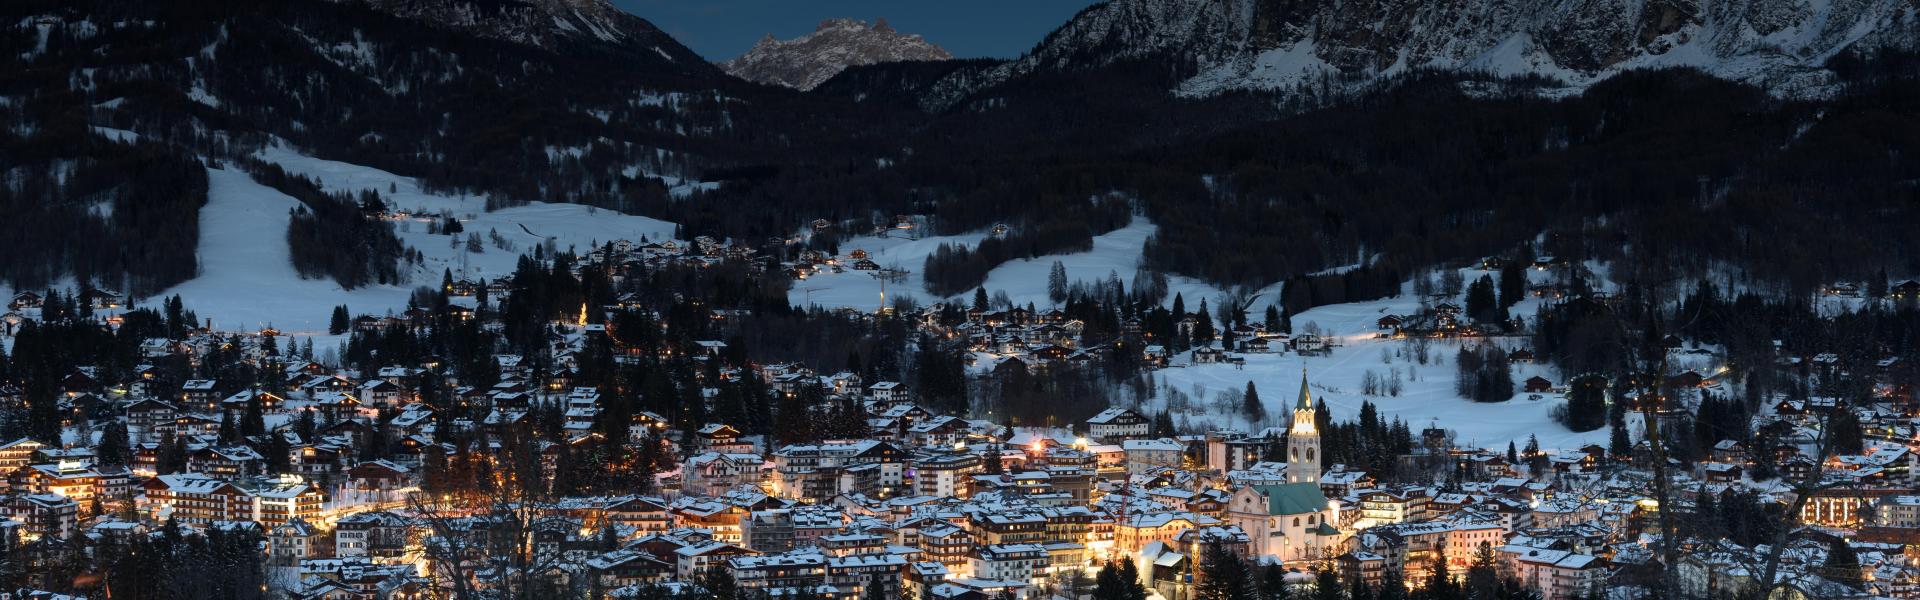 Ferienwohnungen & Unterkünfte in Cortina d'Ampezzo  - HomeToGo